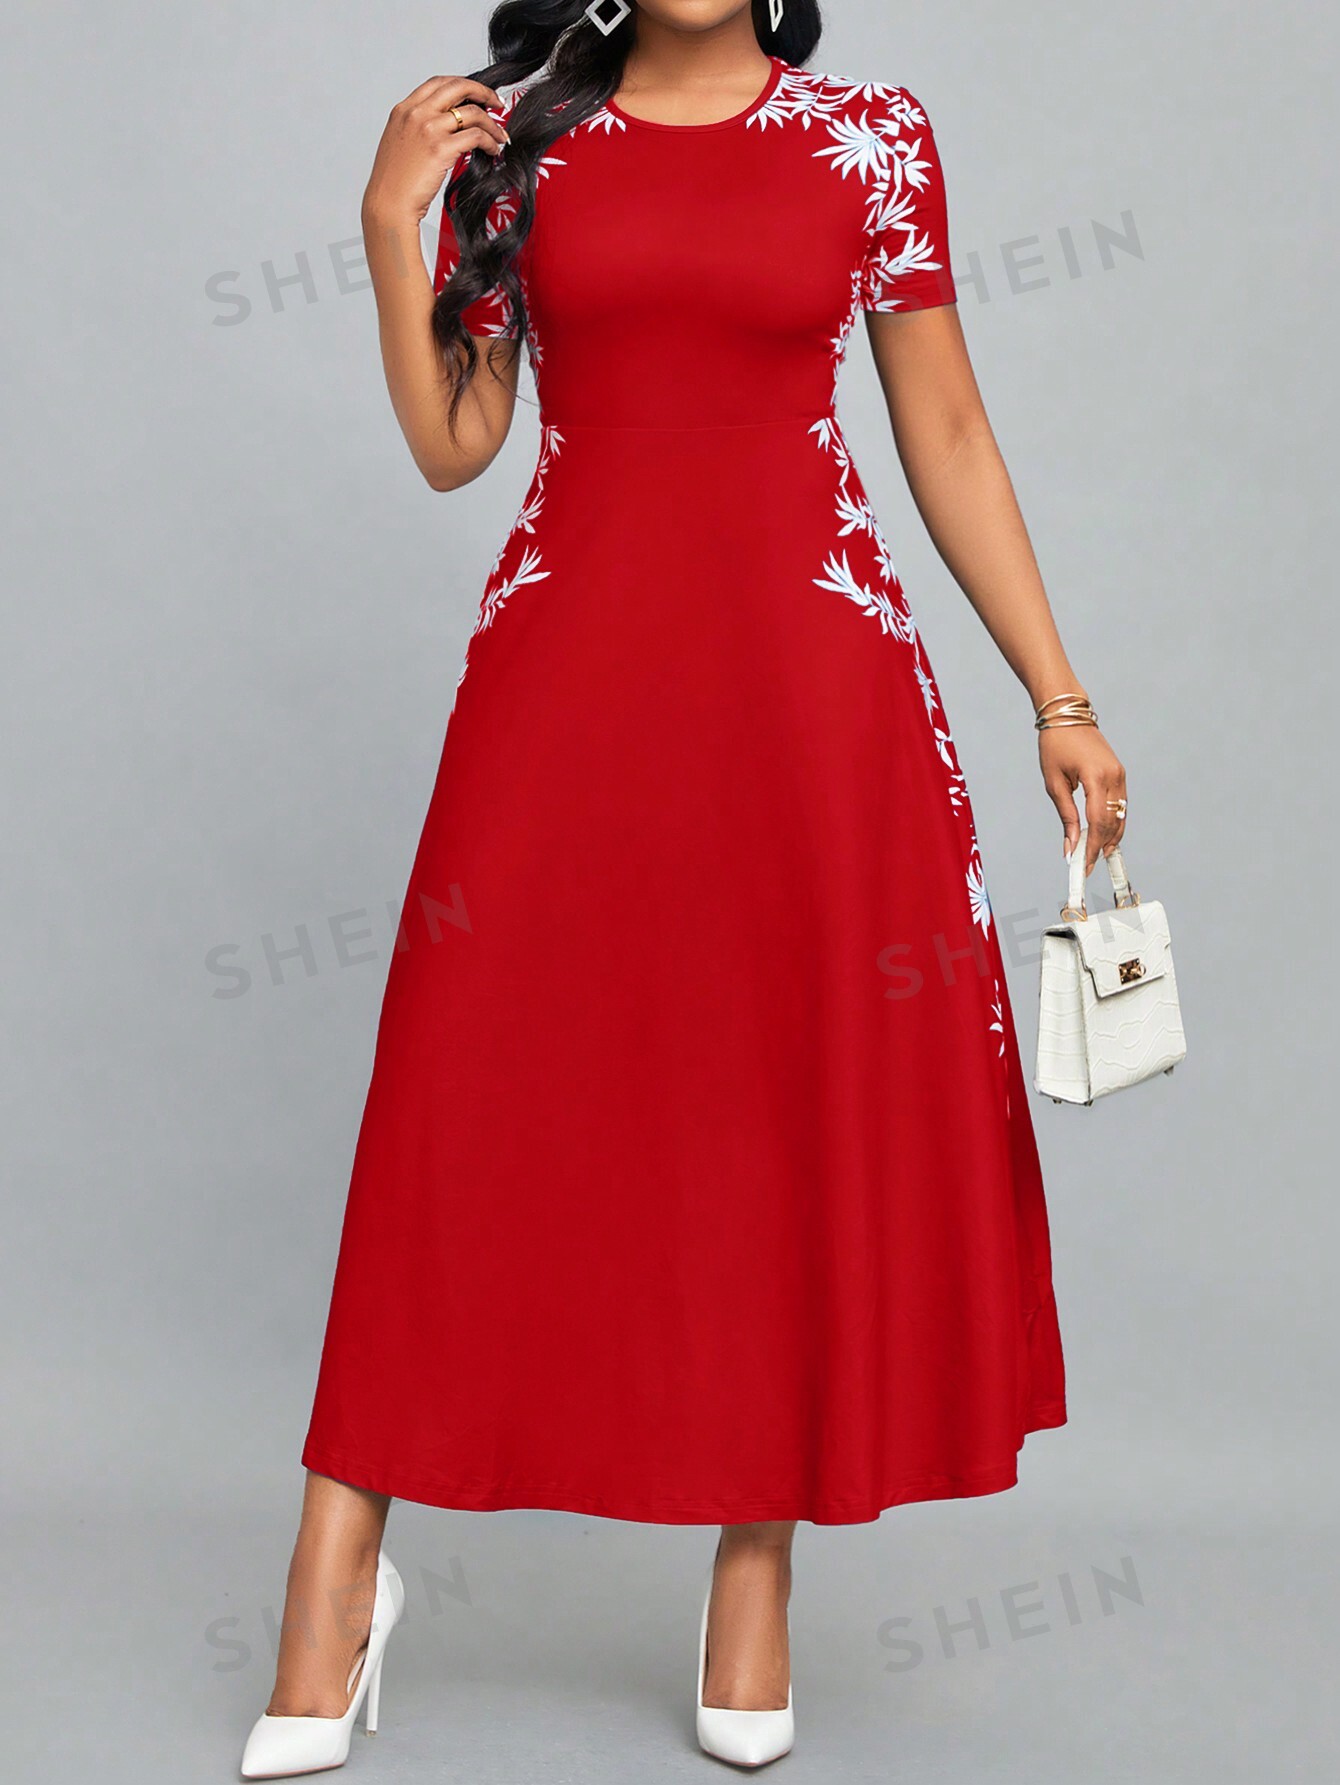 SHEIN Lady Женское платье с круглым вырезом и короткими рукавами с растительным принтом, красный и белый женское платье кардиган из шелка тутового шелкопряда с принтом однотонная длинная юбка с круглым вырезом лето 100%